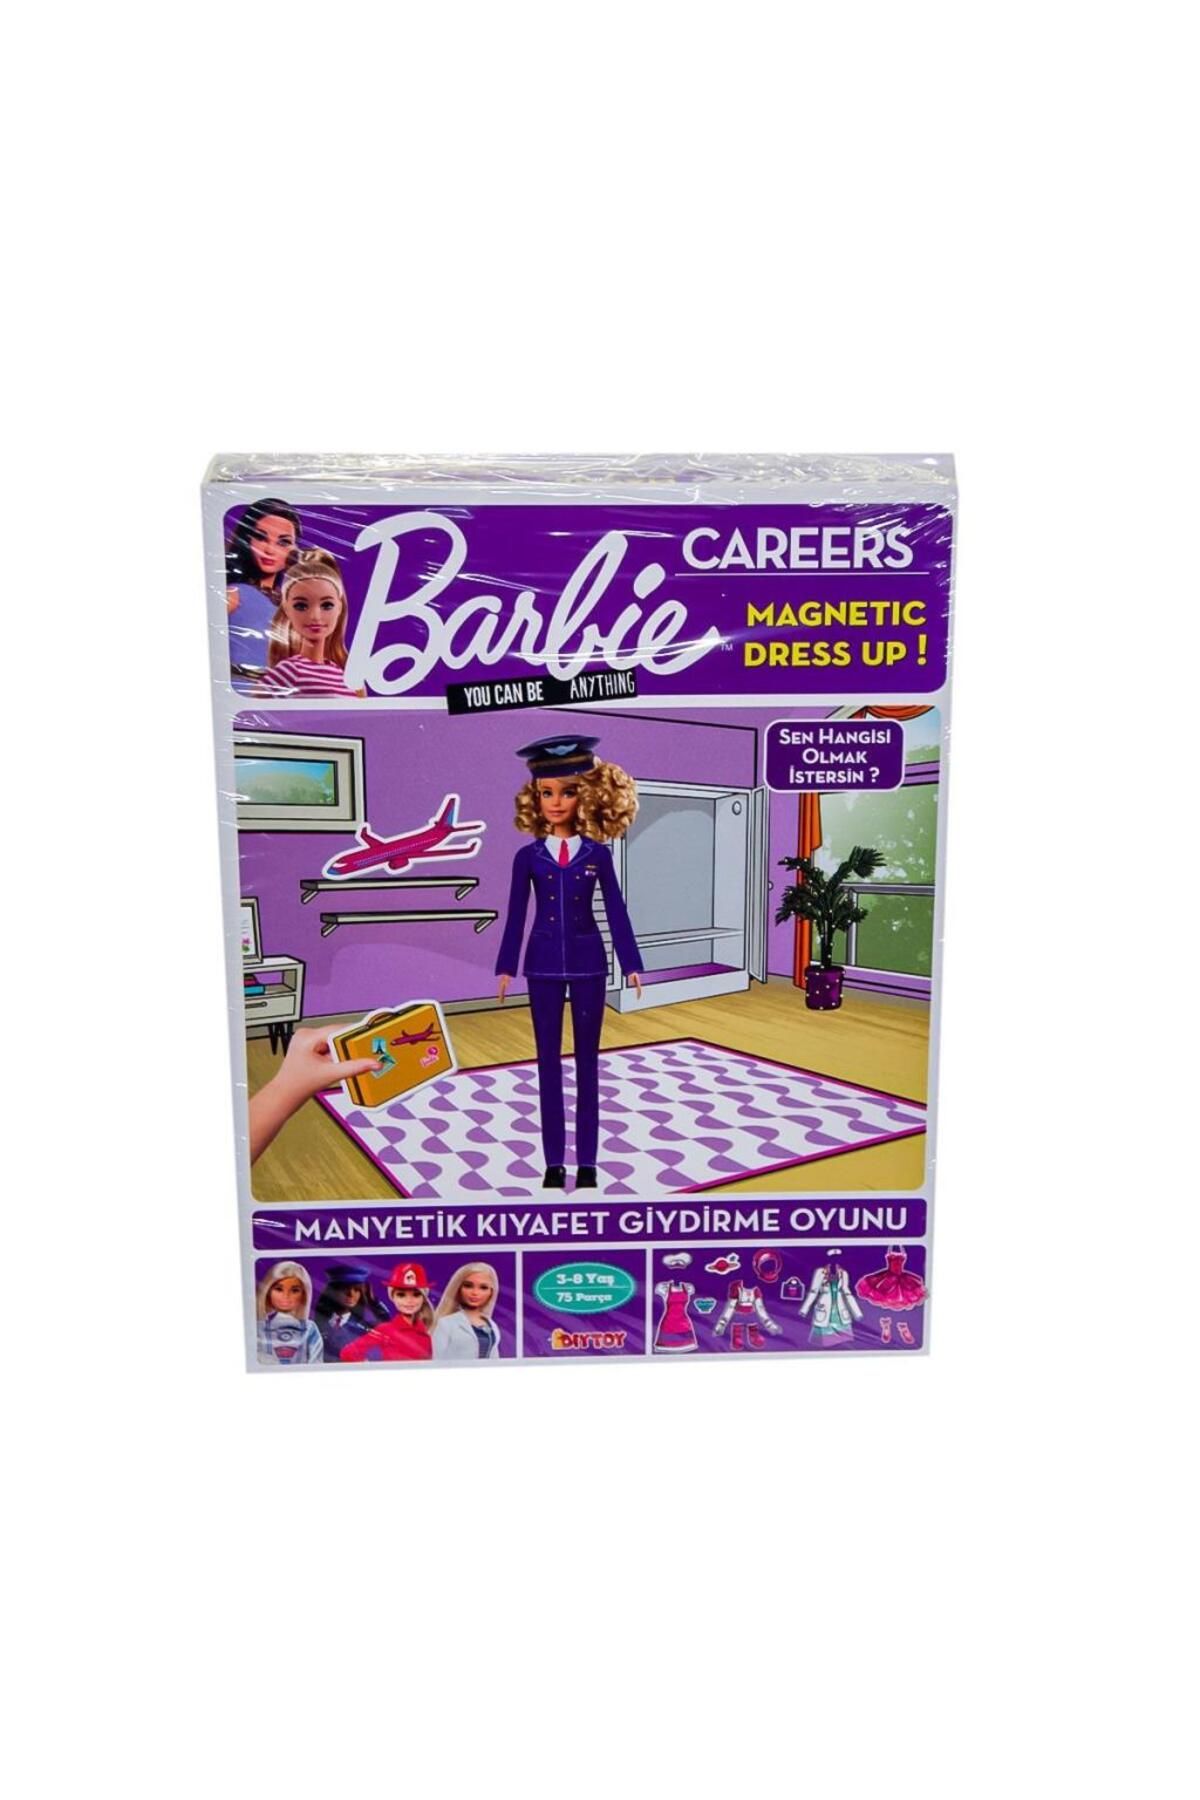 Barbie 1918 DıyToy Barbie Careers Manyetik Kıyafet Giydirme Oyunu / 3-8 yaş - Yubi